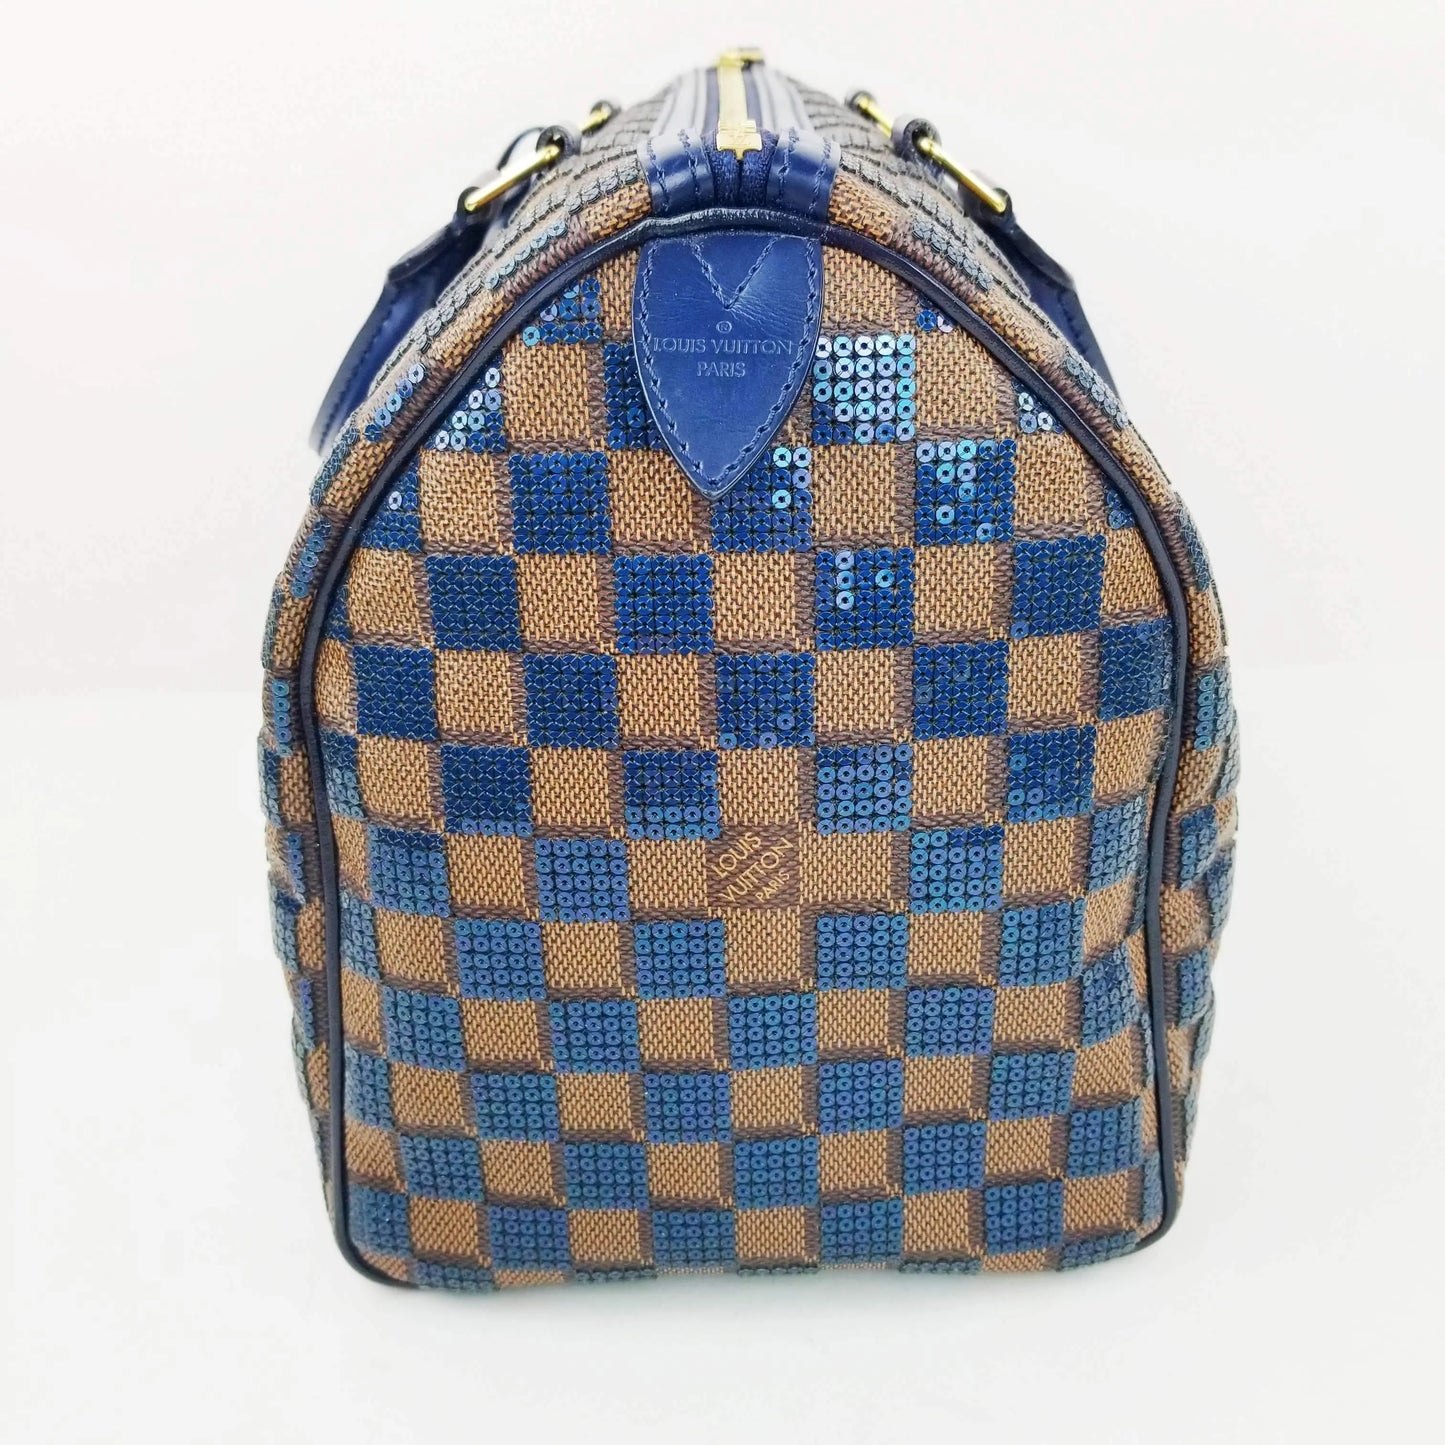 Louis Vuitton Blue Damier Ebene Paillettes Limited Edition Speedy